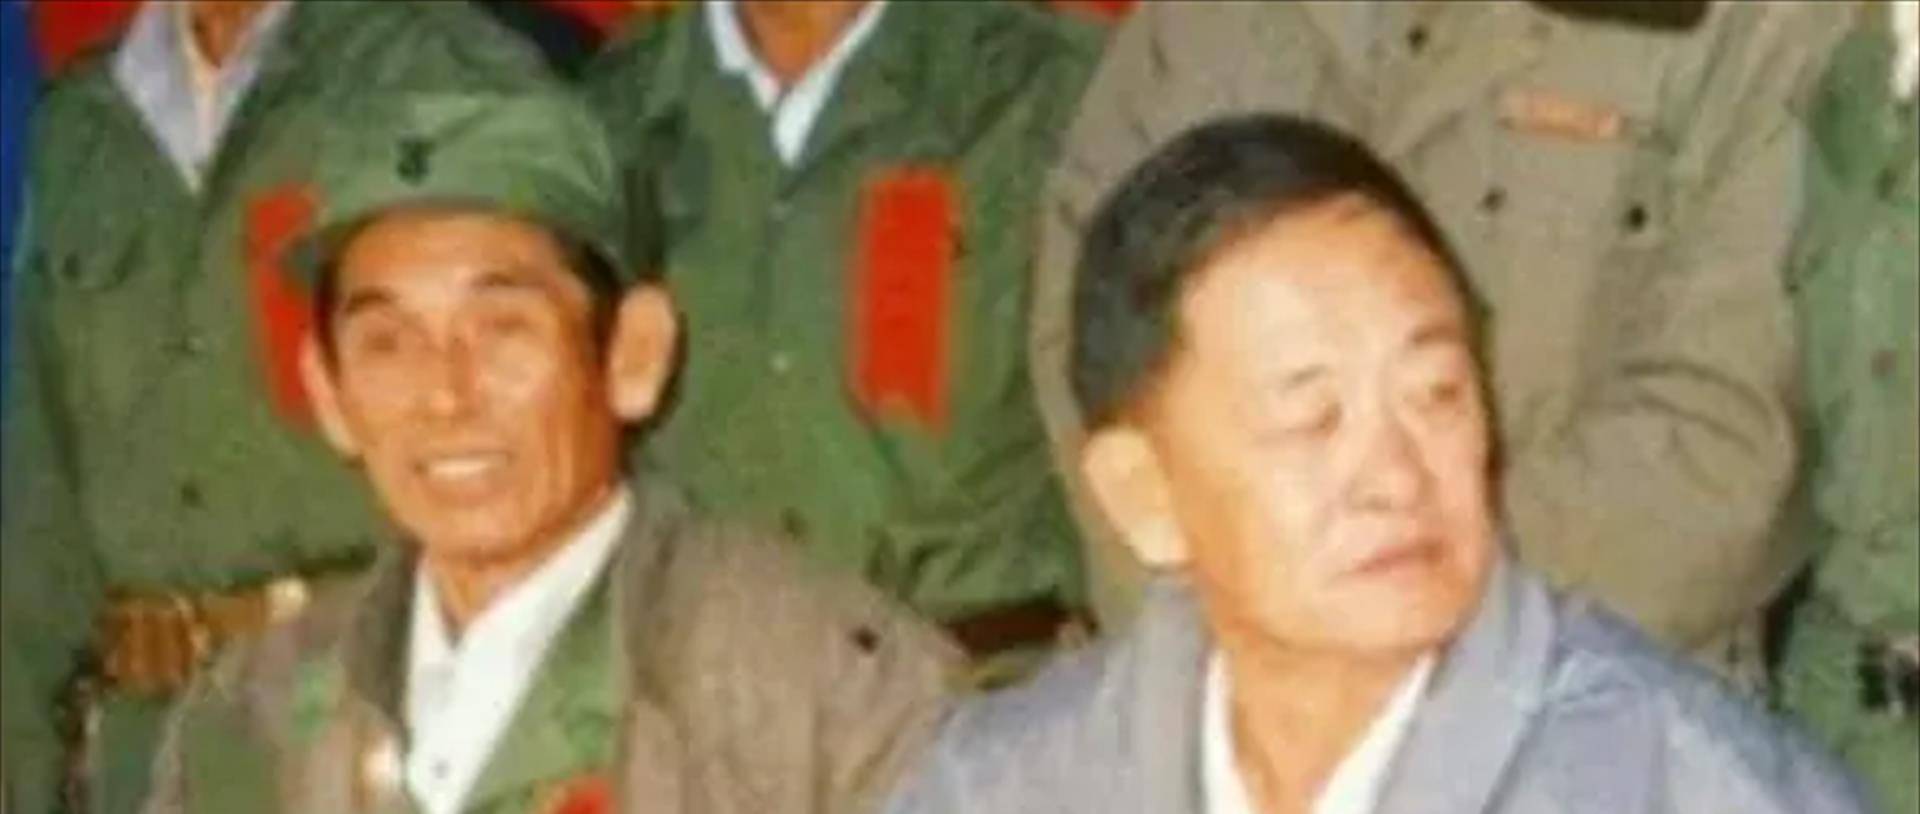 彭家声和罗星汉在无可奈何地情况下,缅甸军政府扶持